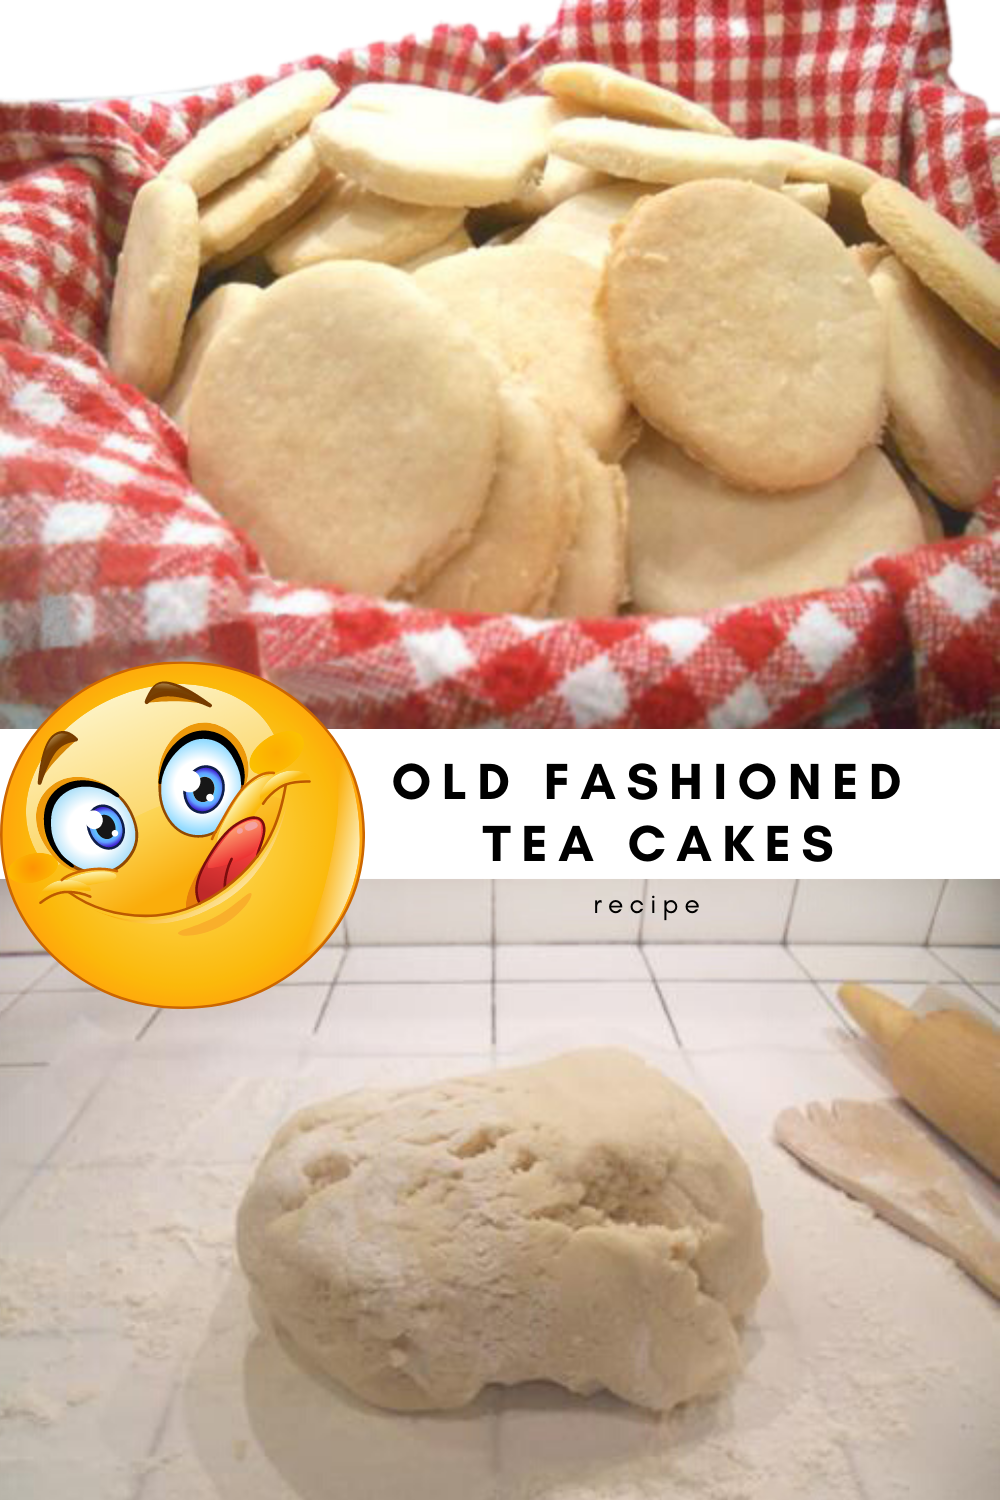 tea cake recipe, old fashioned teacakes, sugar cookie